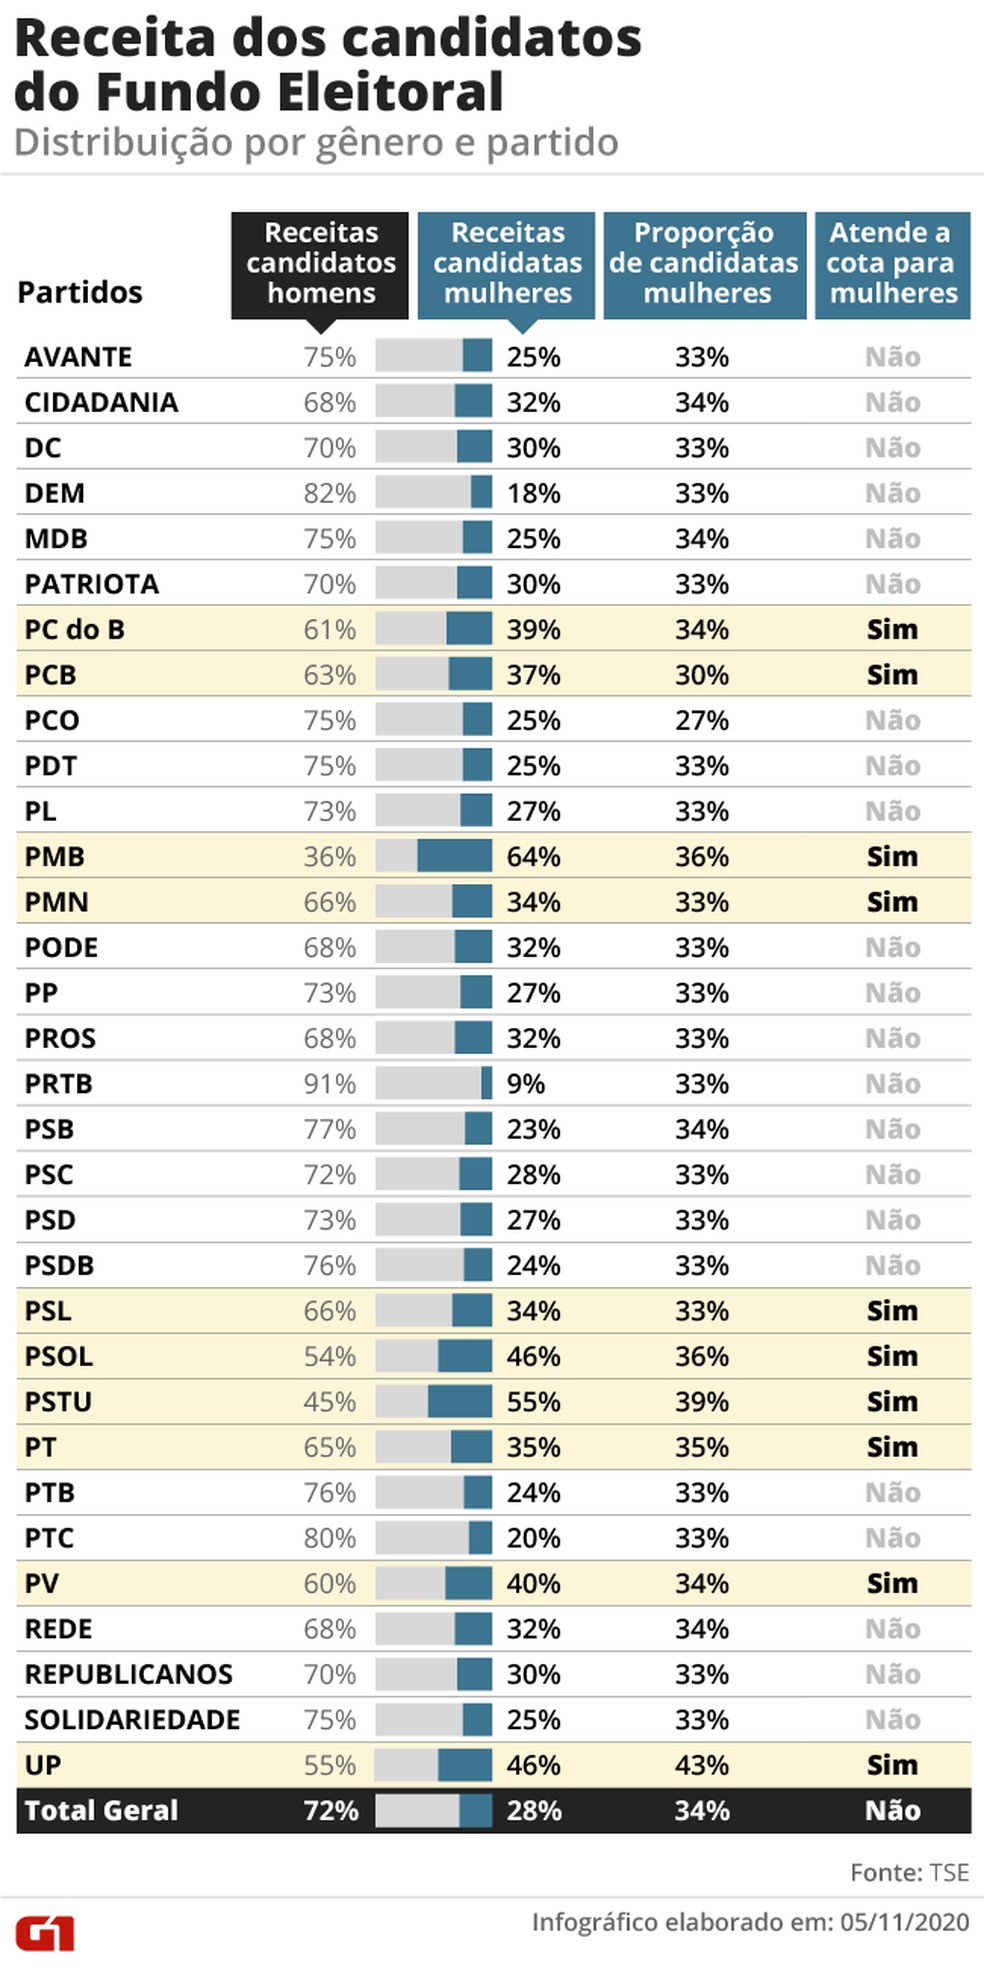 Partidos em Números: PMB e PROS